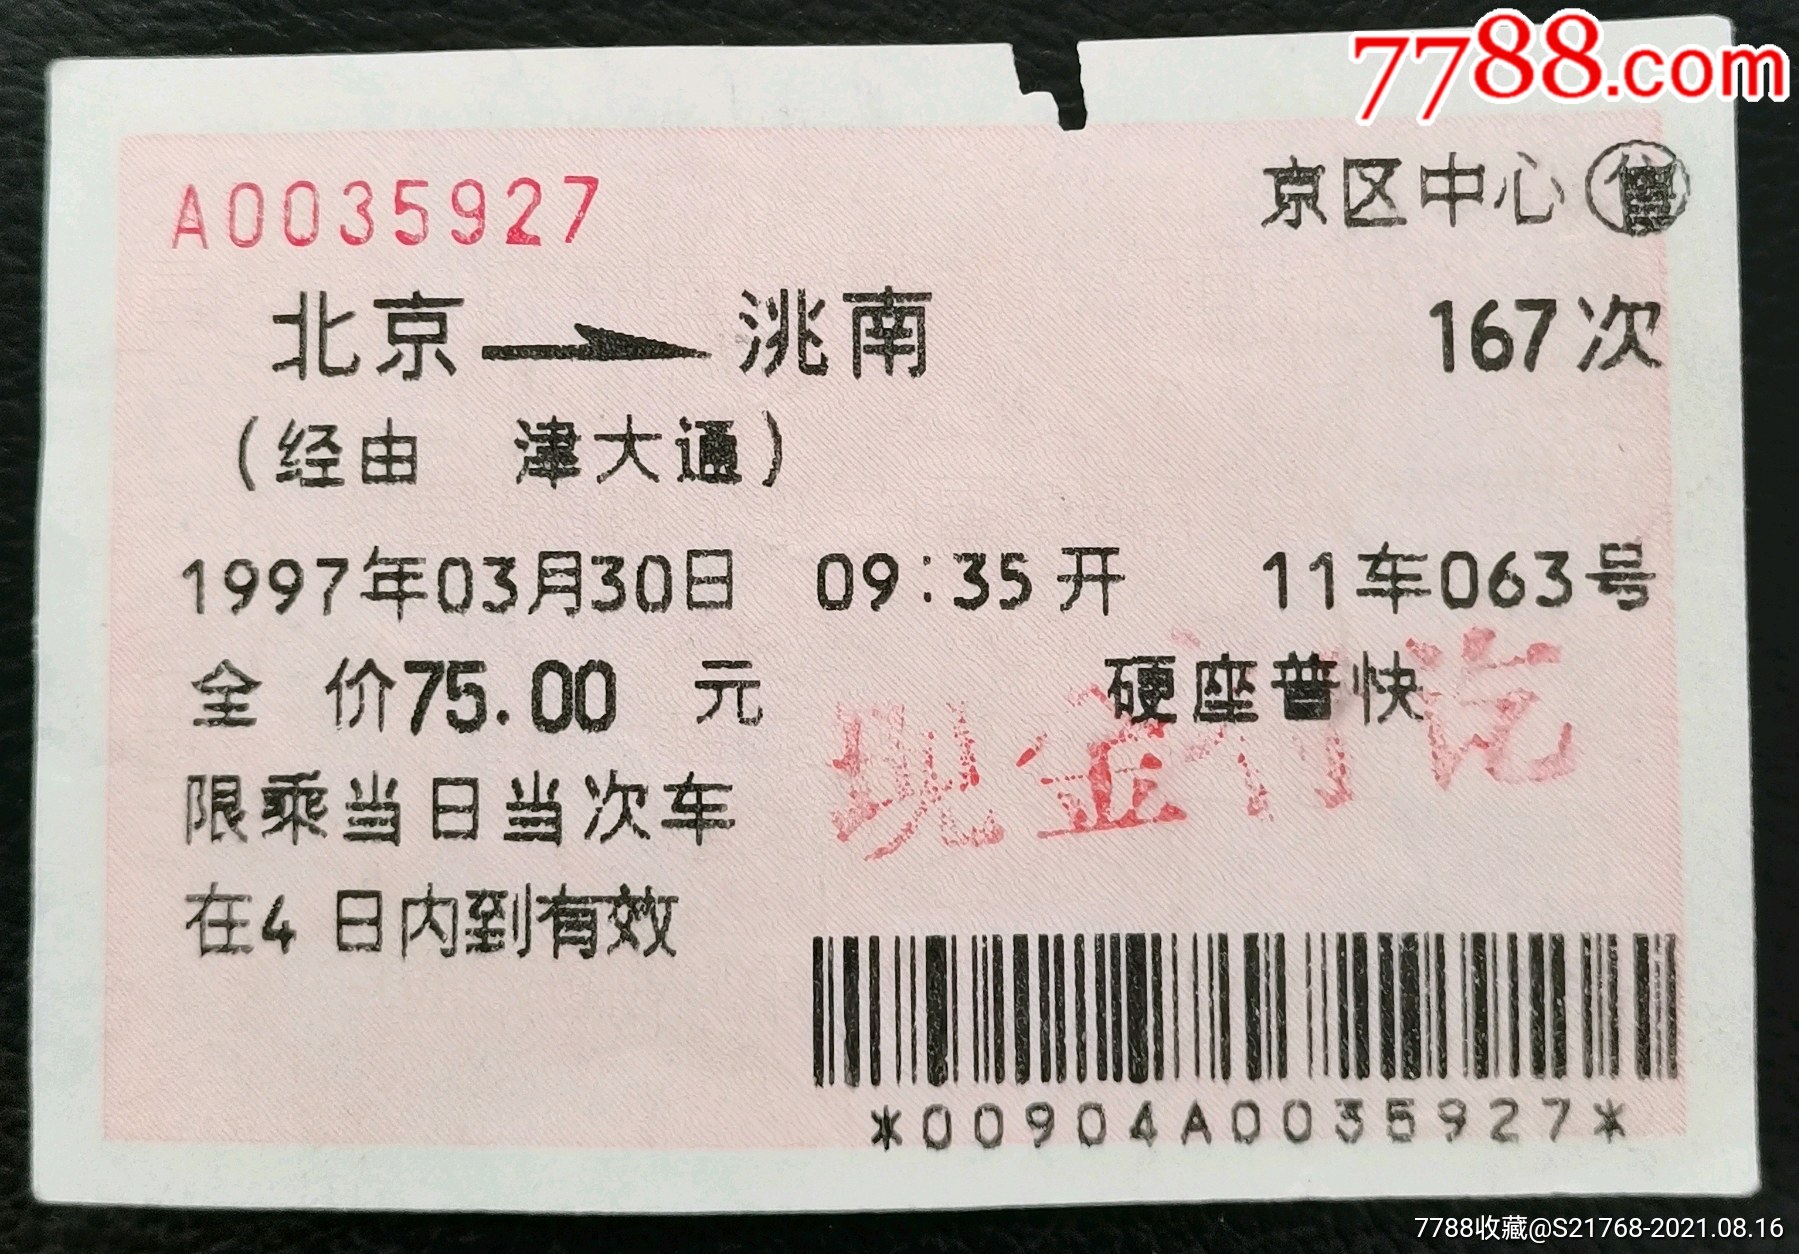 1997330通票经由津大通北京洮南167次